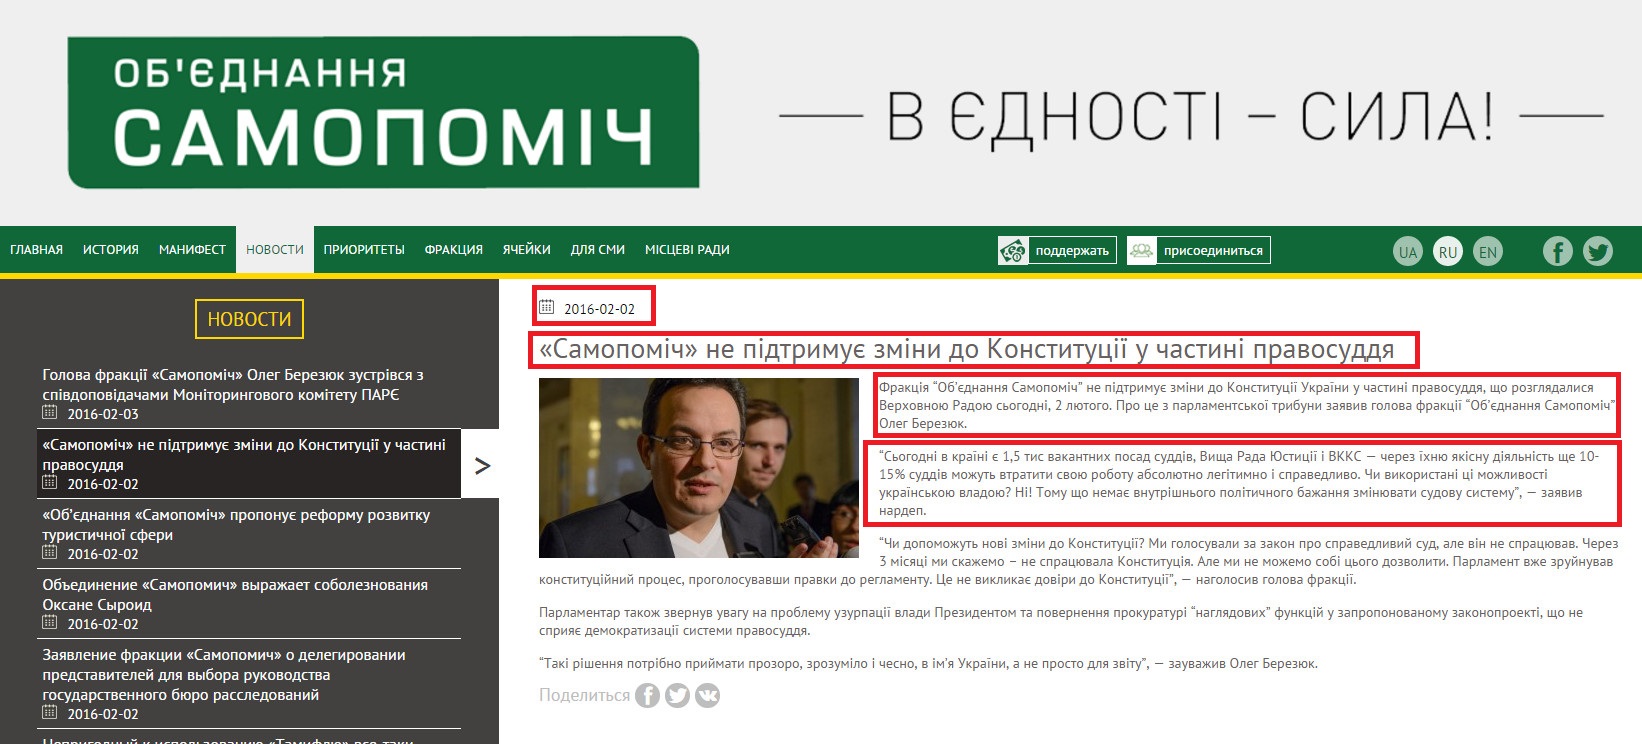 http://samopomich.ua/ru/uk-samopomich-ne-pidtrymuje-zminy-do-konstytutsiji-u-chastyni-pravosuddya/